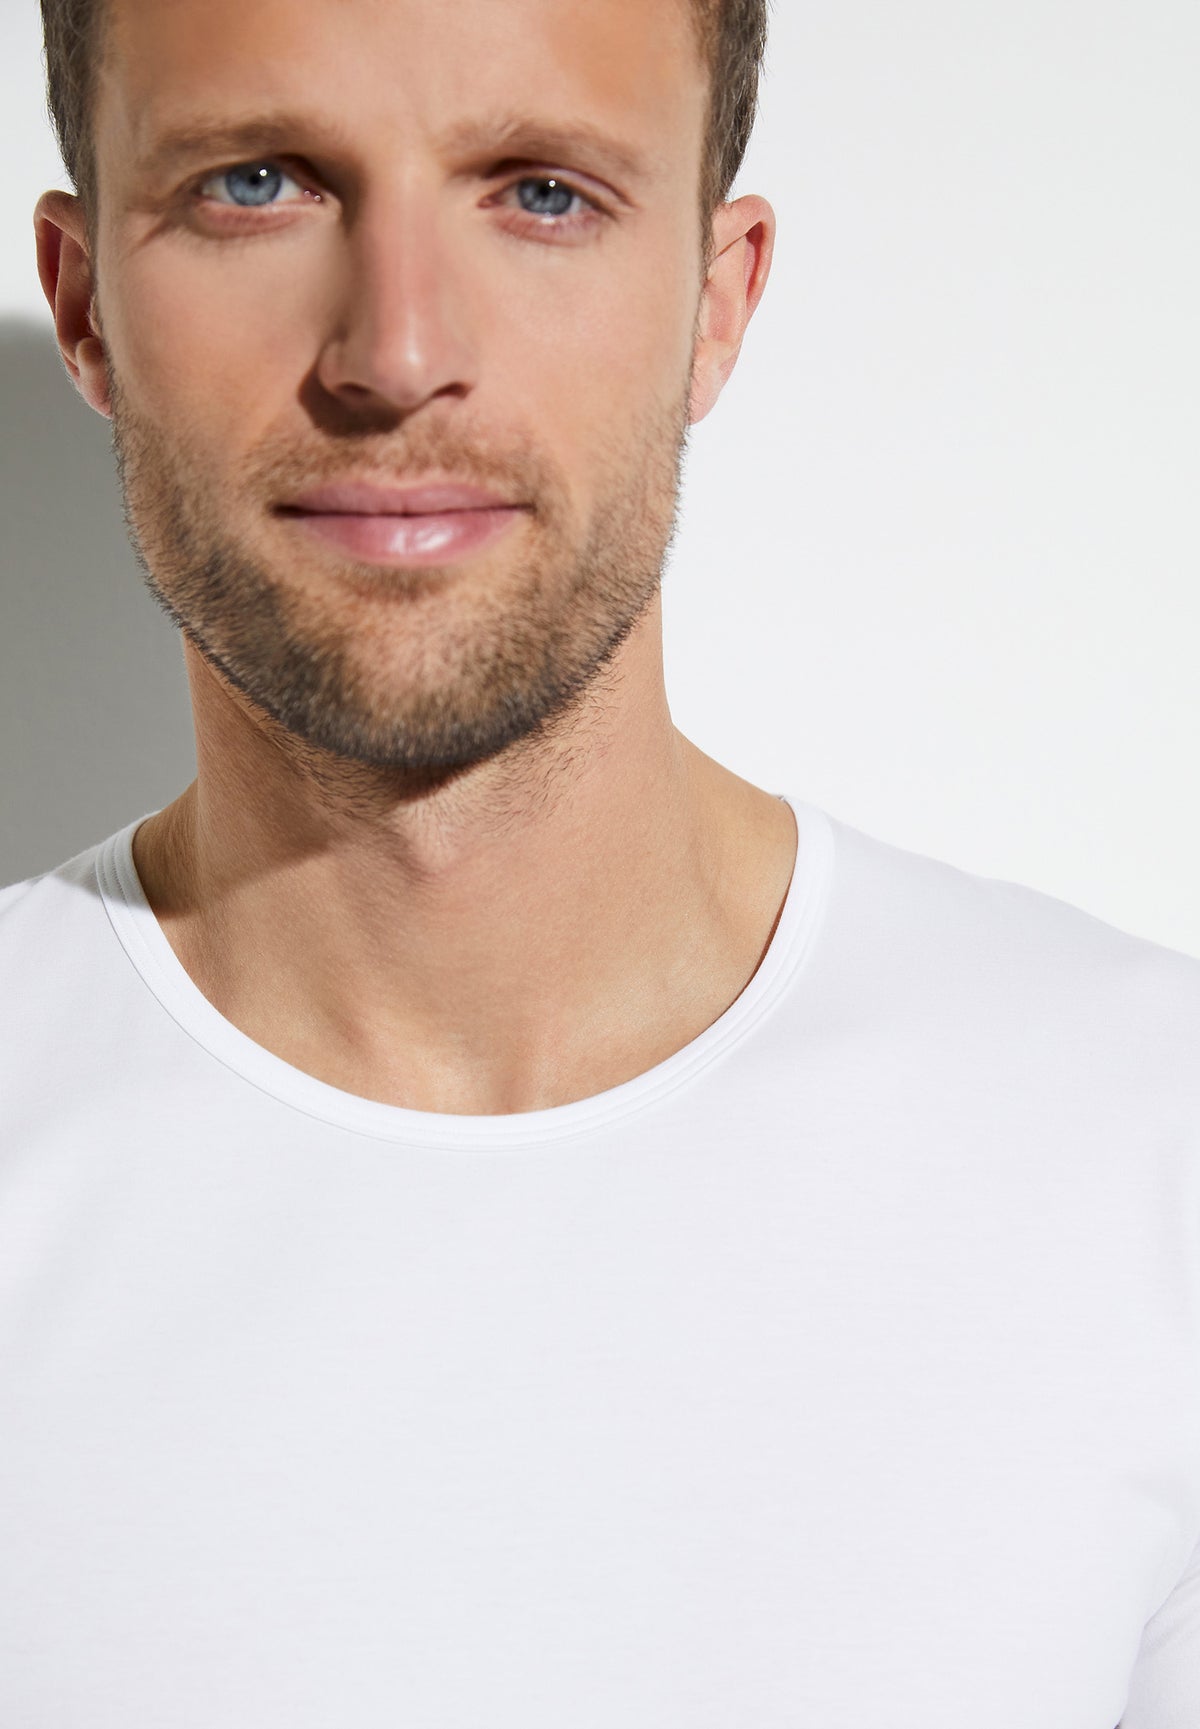 Pure Comfort | T-Shirt à manches courtes - white